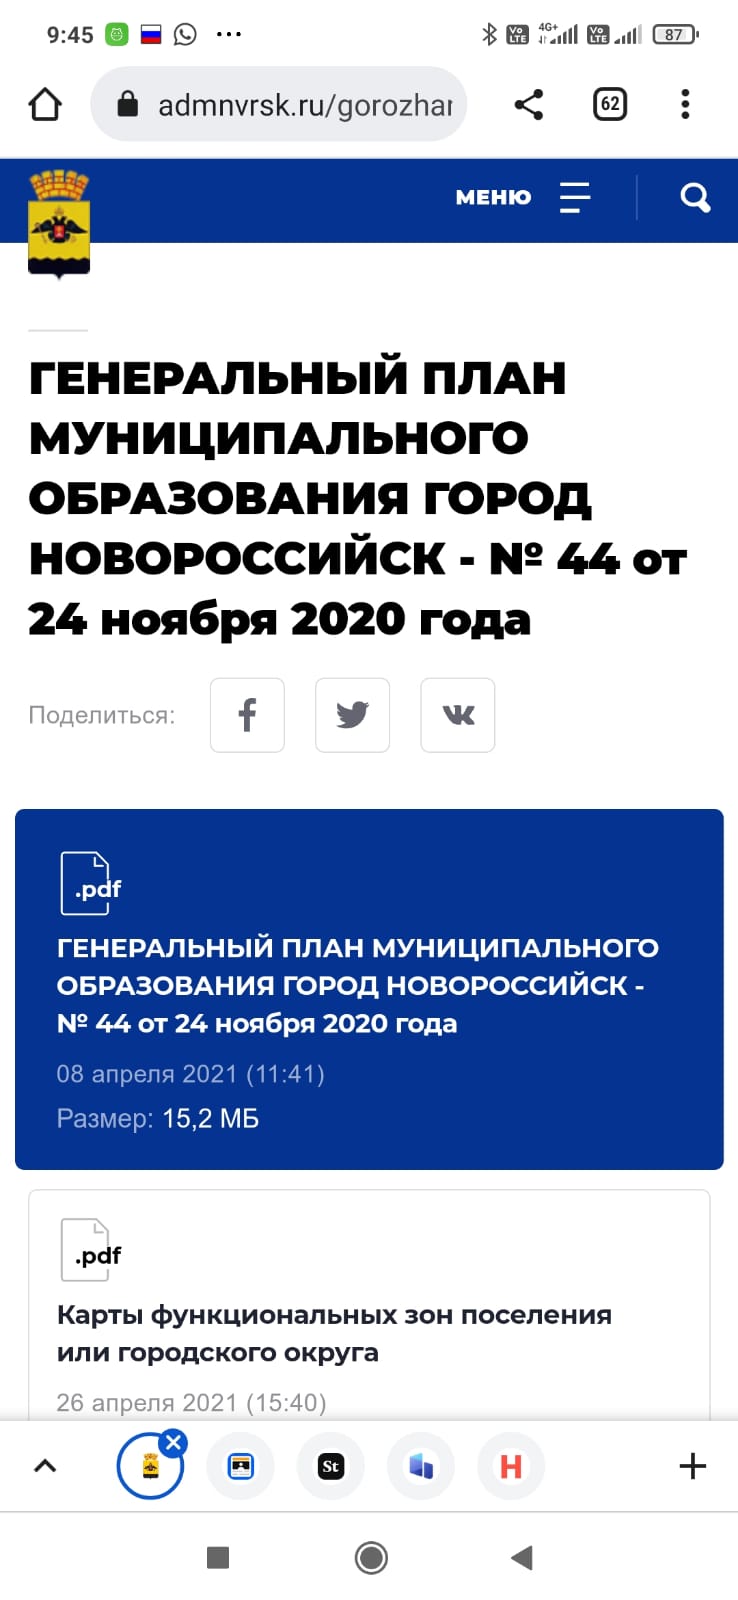 Очередное гетто: так оценили генплан Новороссийска общественники ВИДЕО